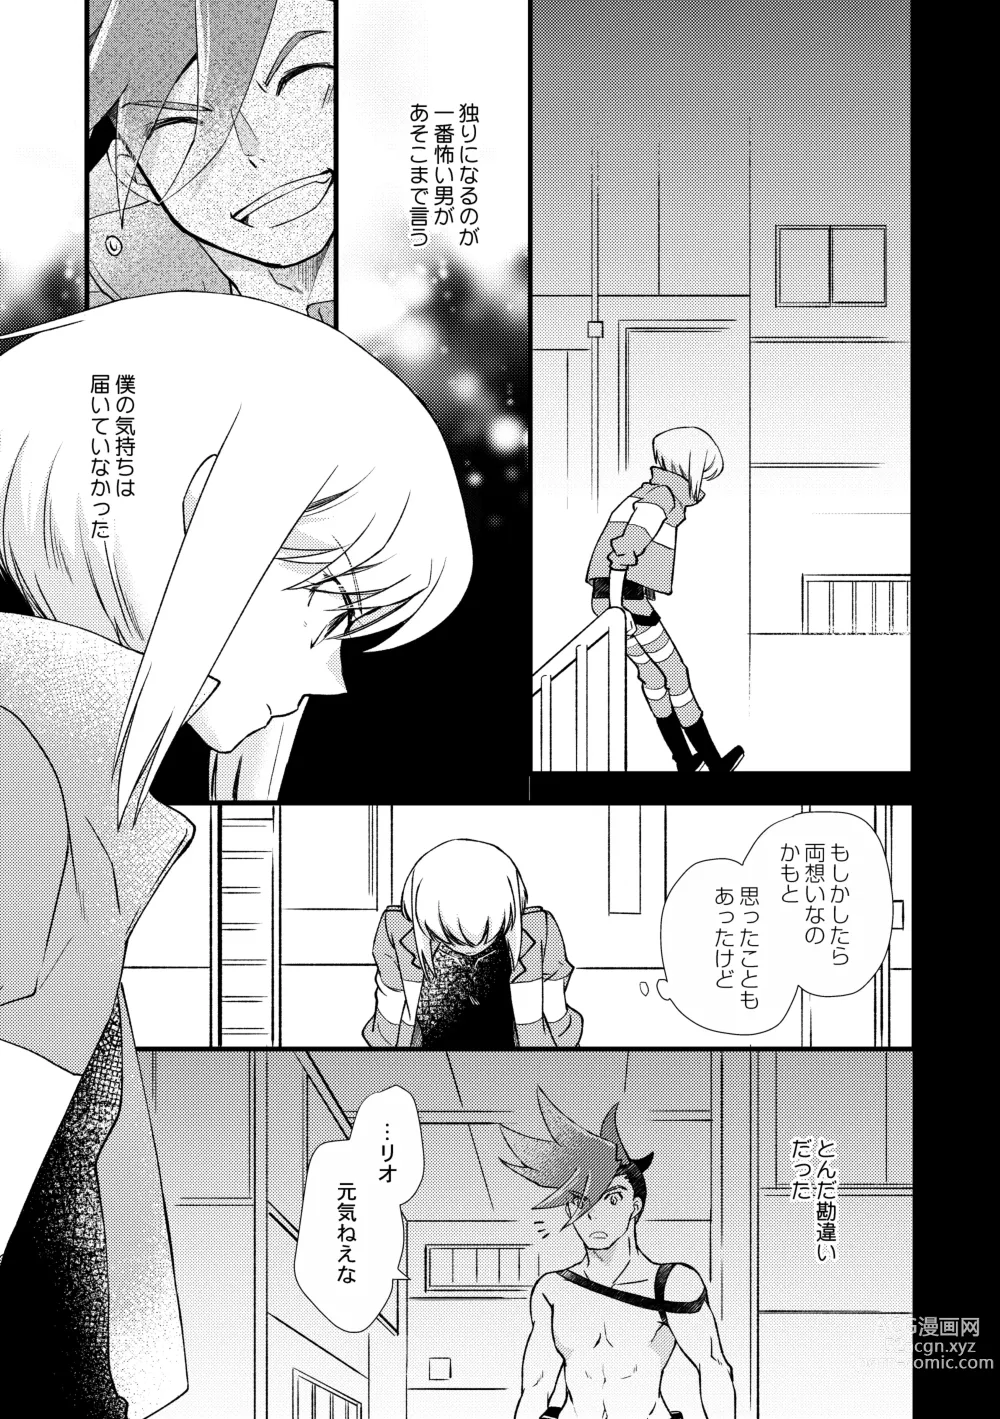 Page 16 of doujinshi Sekai wa Onchi na Utagoe de